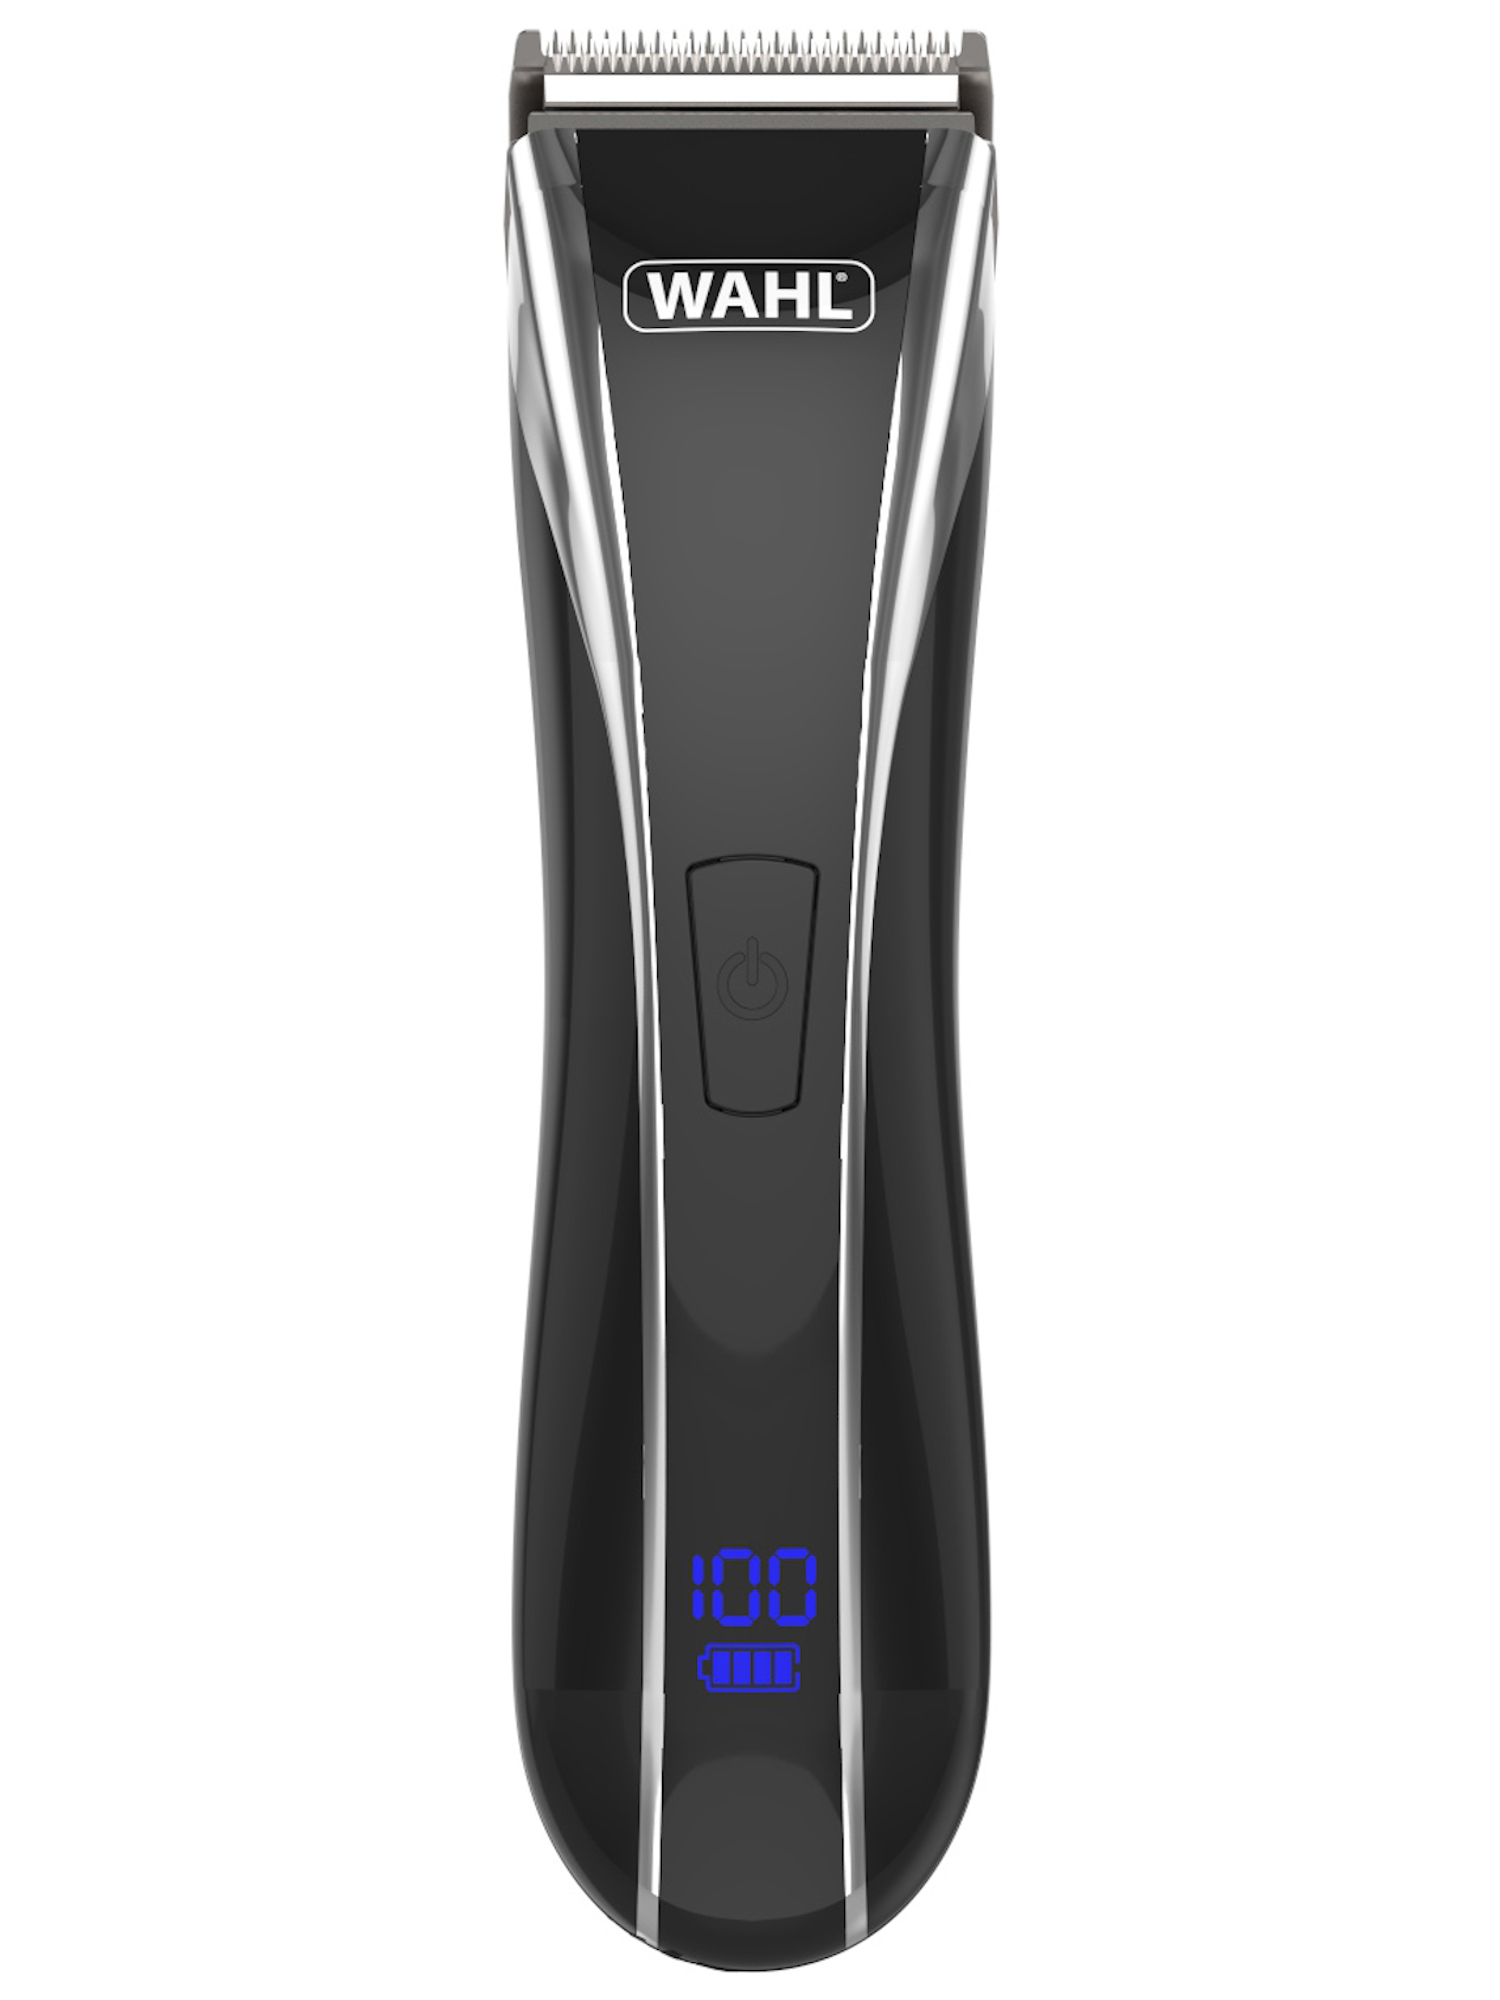 Zastřihovač vlasů Wahl Lithium Pro LCD 1911-0467 - černý + DÁREK ZDARMA